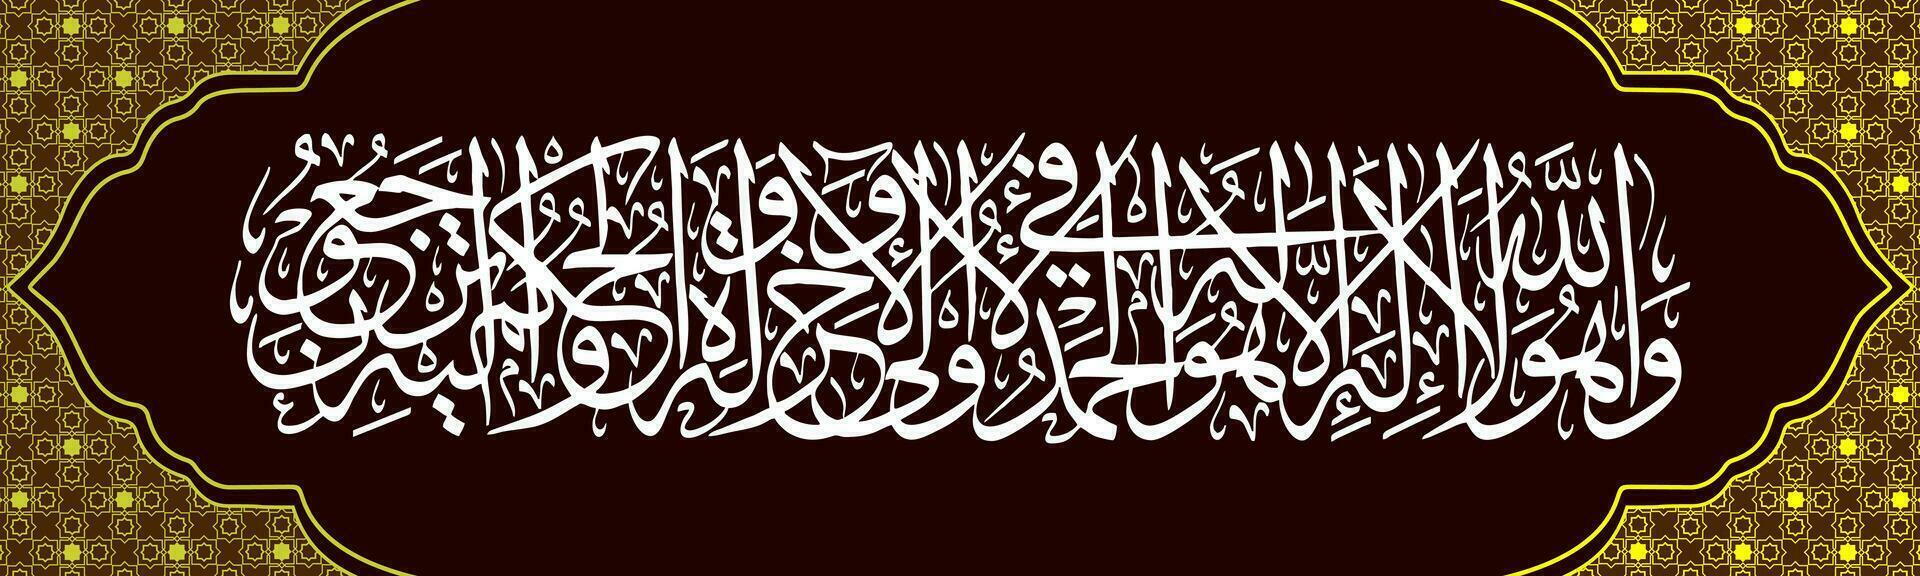 arabicum kalligrafi surah al-qur'an surah qasas vers 70 som betyder och han är Allah, där är Nej Gud värdig av dyrkan bortsett från honom, vektor